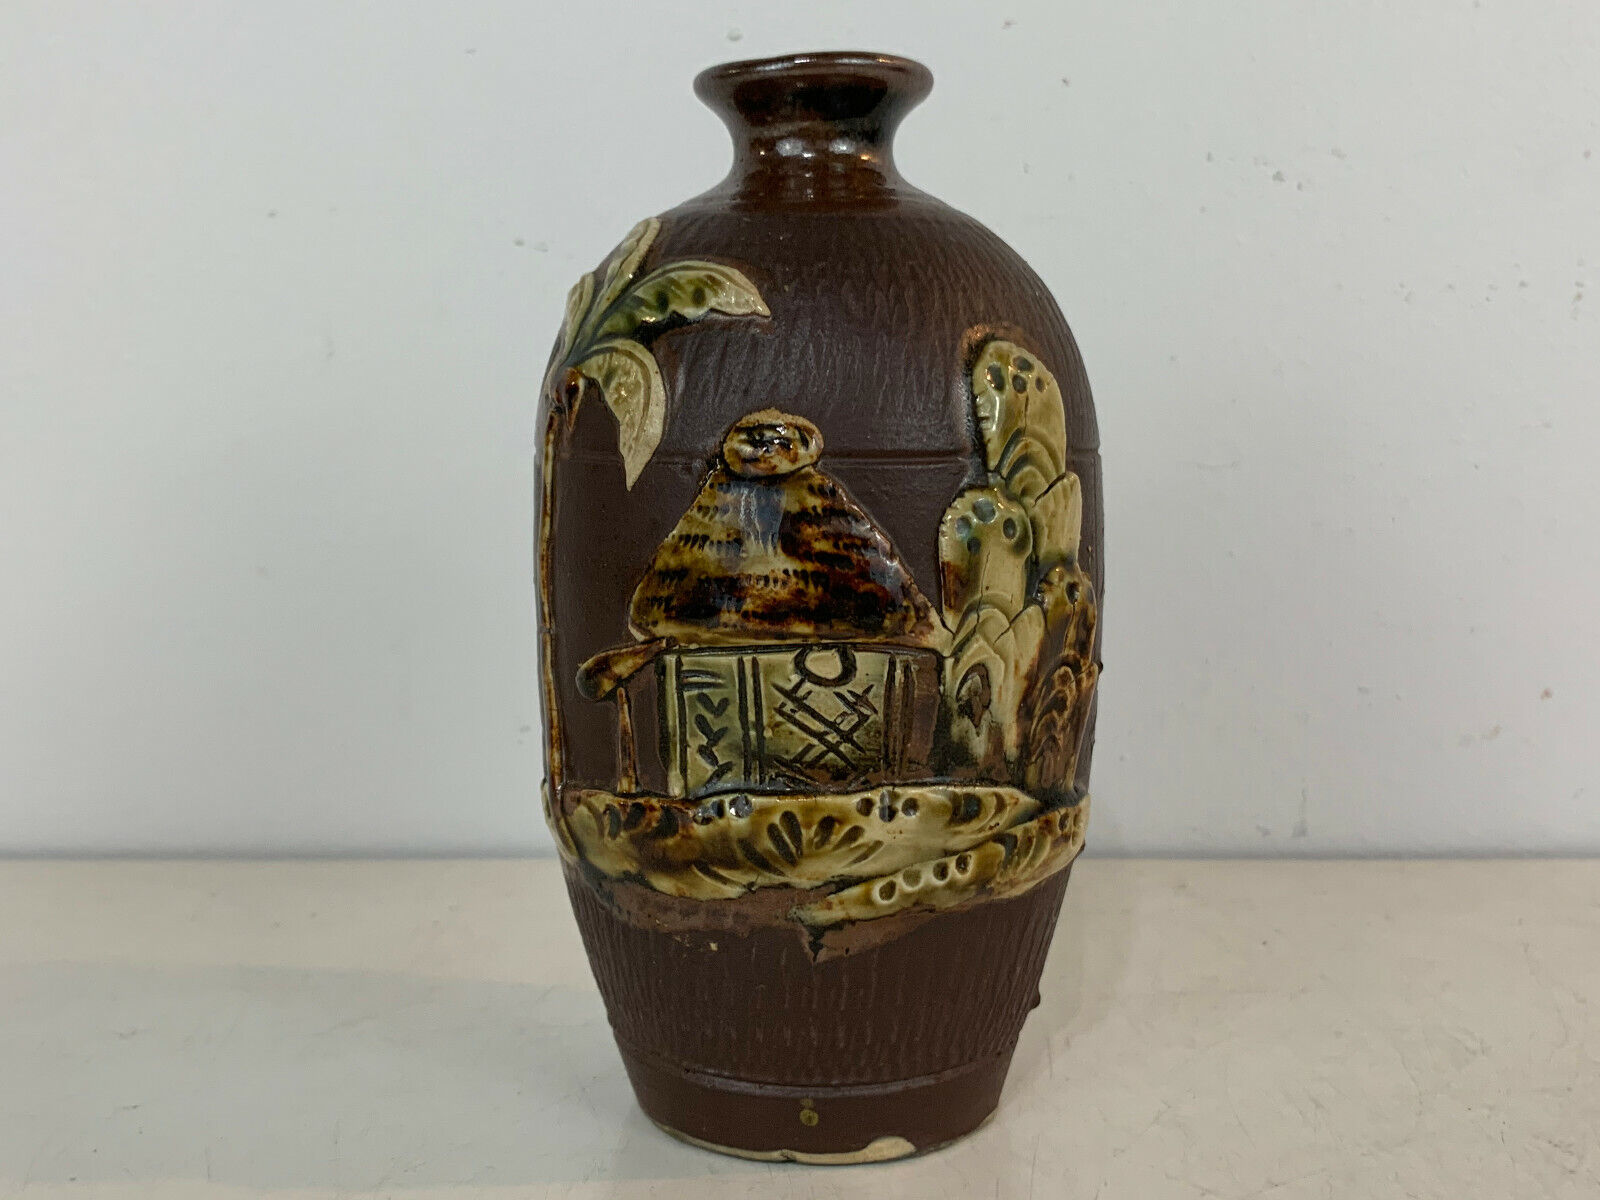 Asian Japanese Ceramic Art Pottery Signed Vase w/ Hut House & Tree Decoration